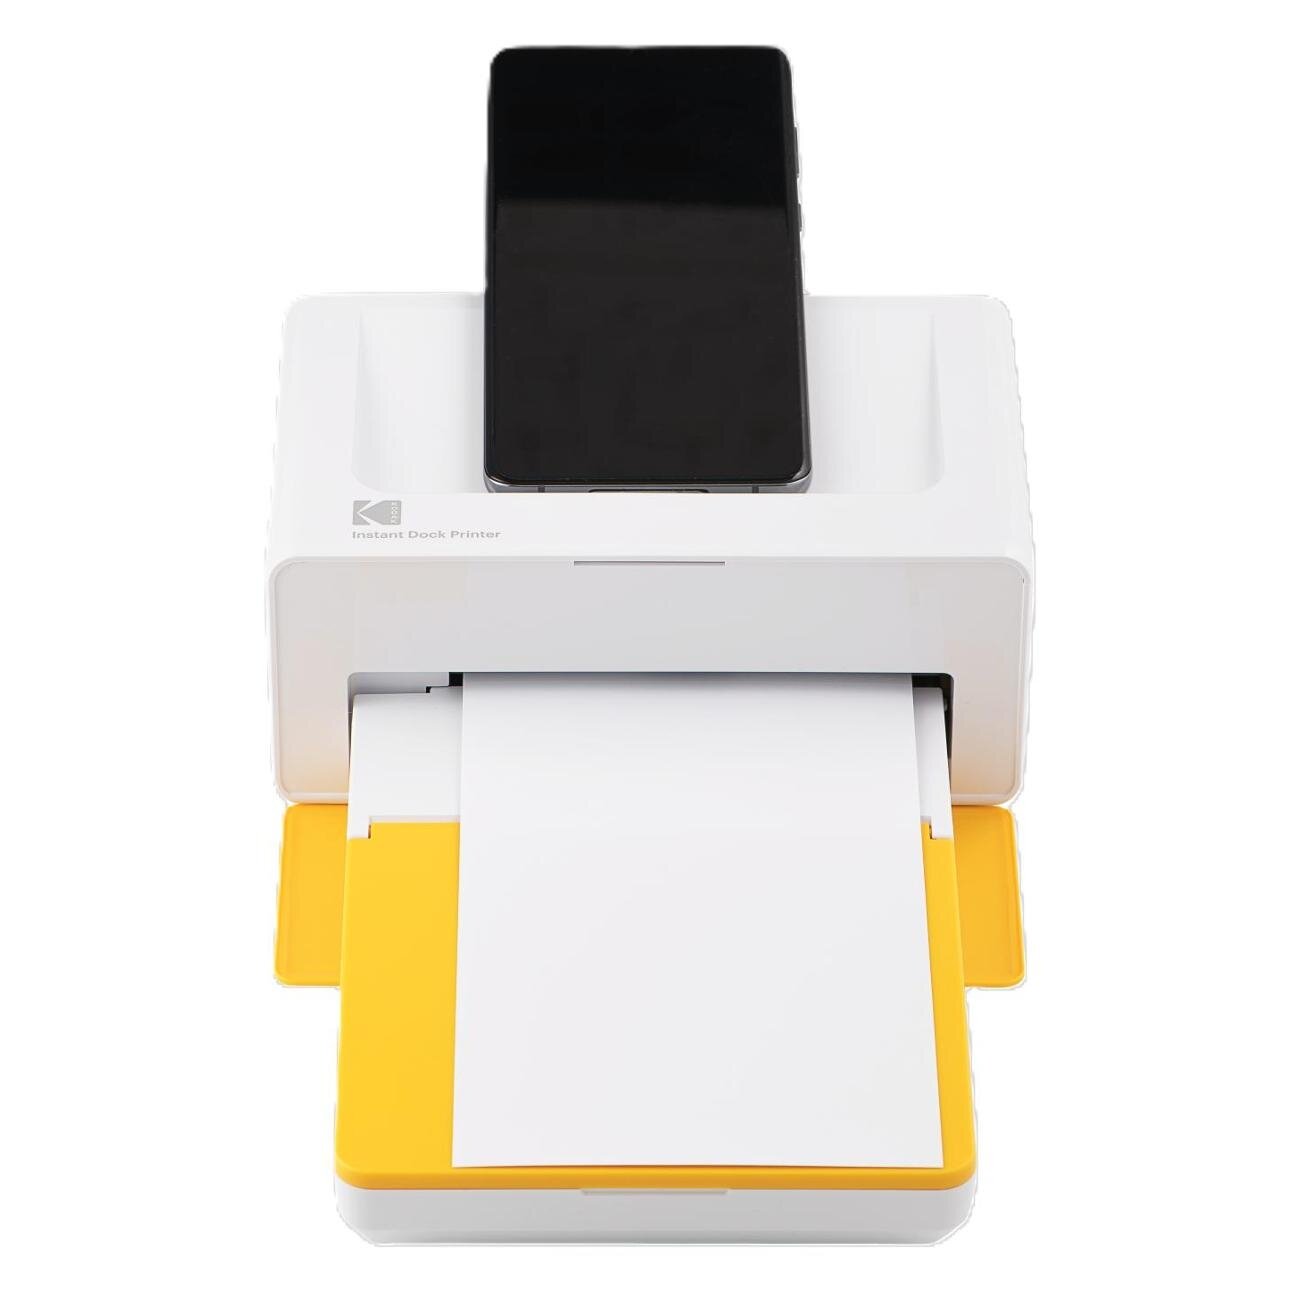 Компактный фотопринтер Kodak PD460 (Dock Plus Printer) желтый/белый